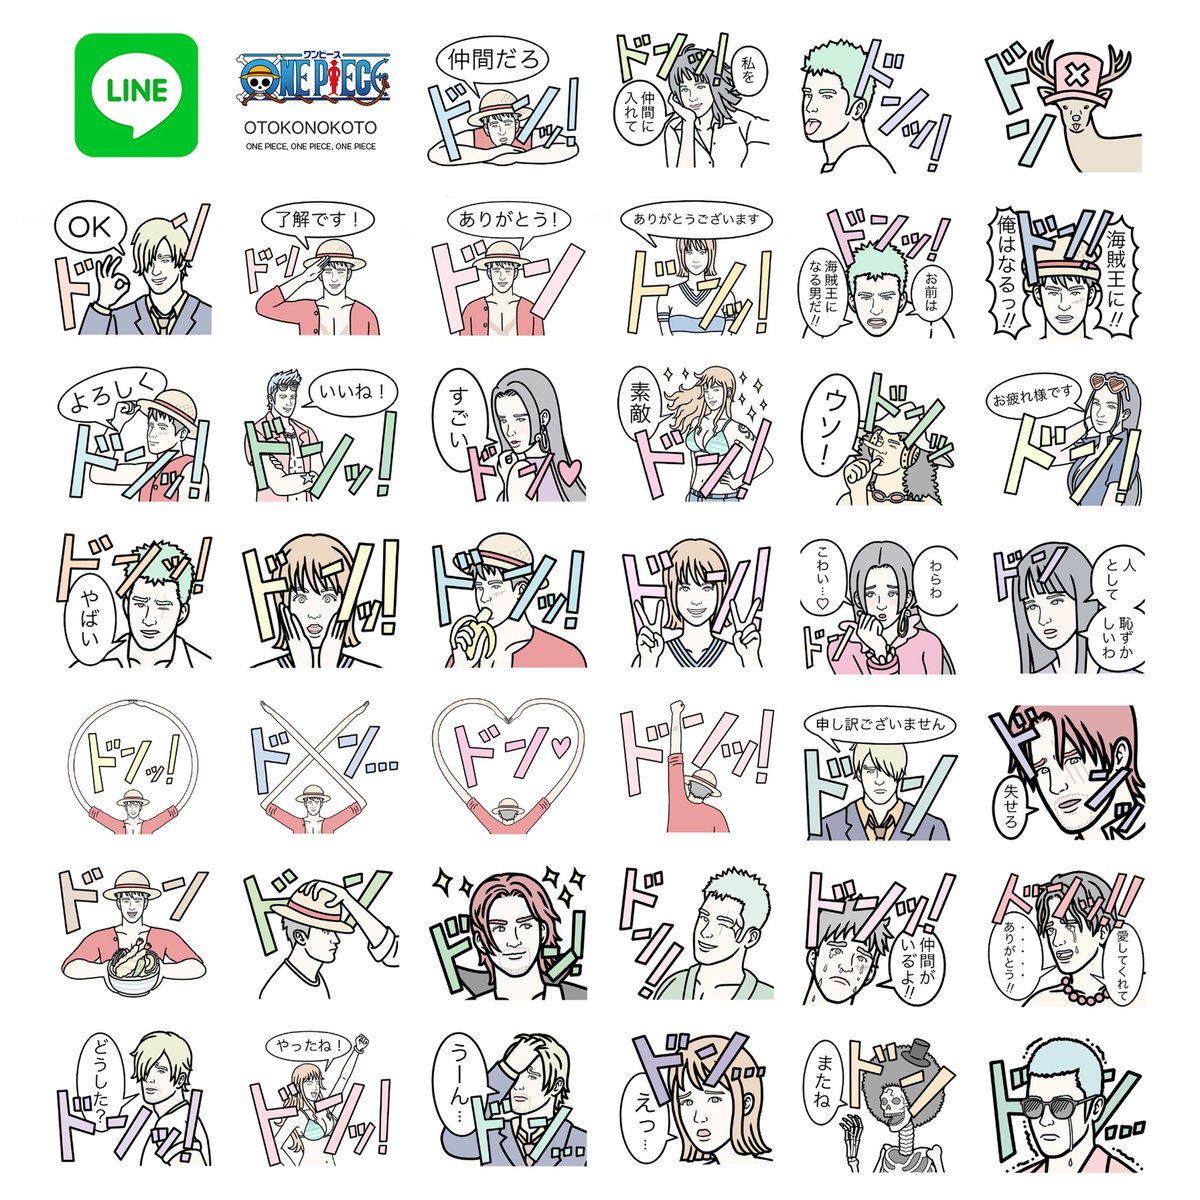 Otokonokoto Sur Twitter 大人気漫画 アニメone Pieceのコラボlineスタンプをリリースしました 40種類全部の スタンプに ドンッ を入れてみました どんどん使っていただけると嬉しいです T Co 6puvqfgahy ワンピース イラスト Lineクリエイターズ